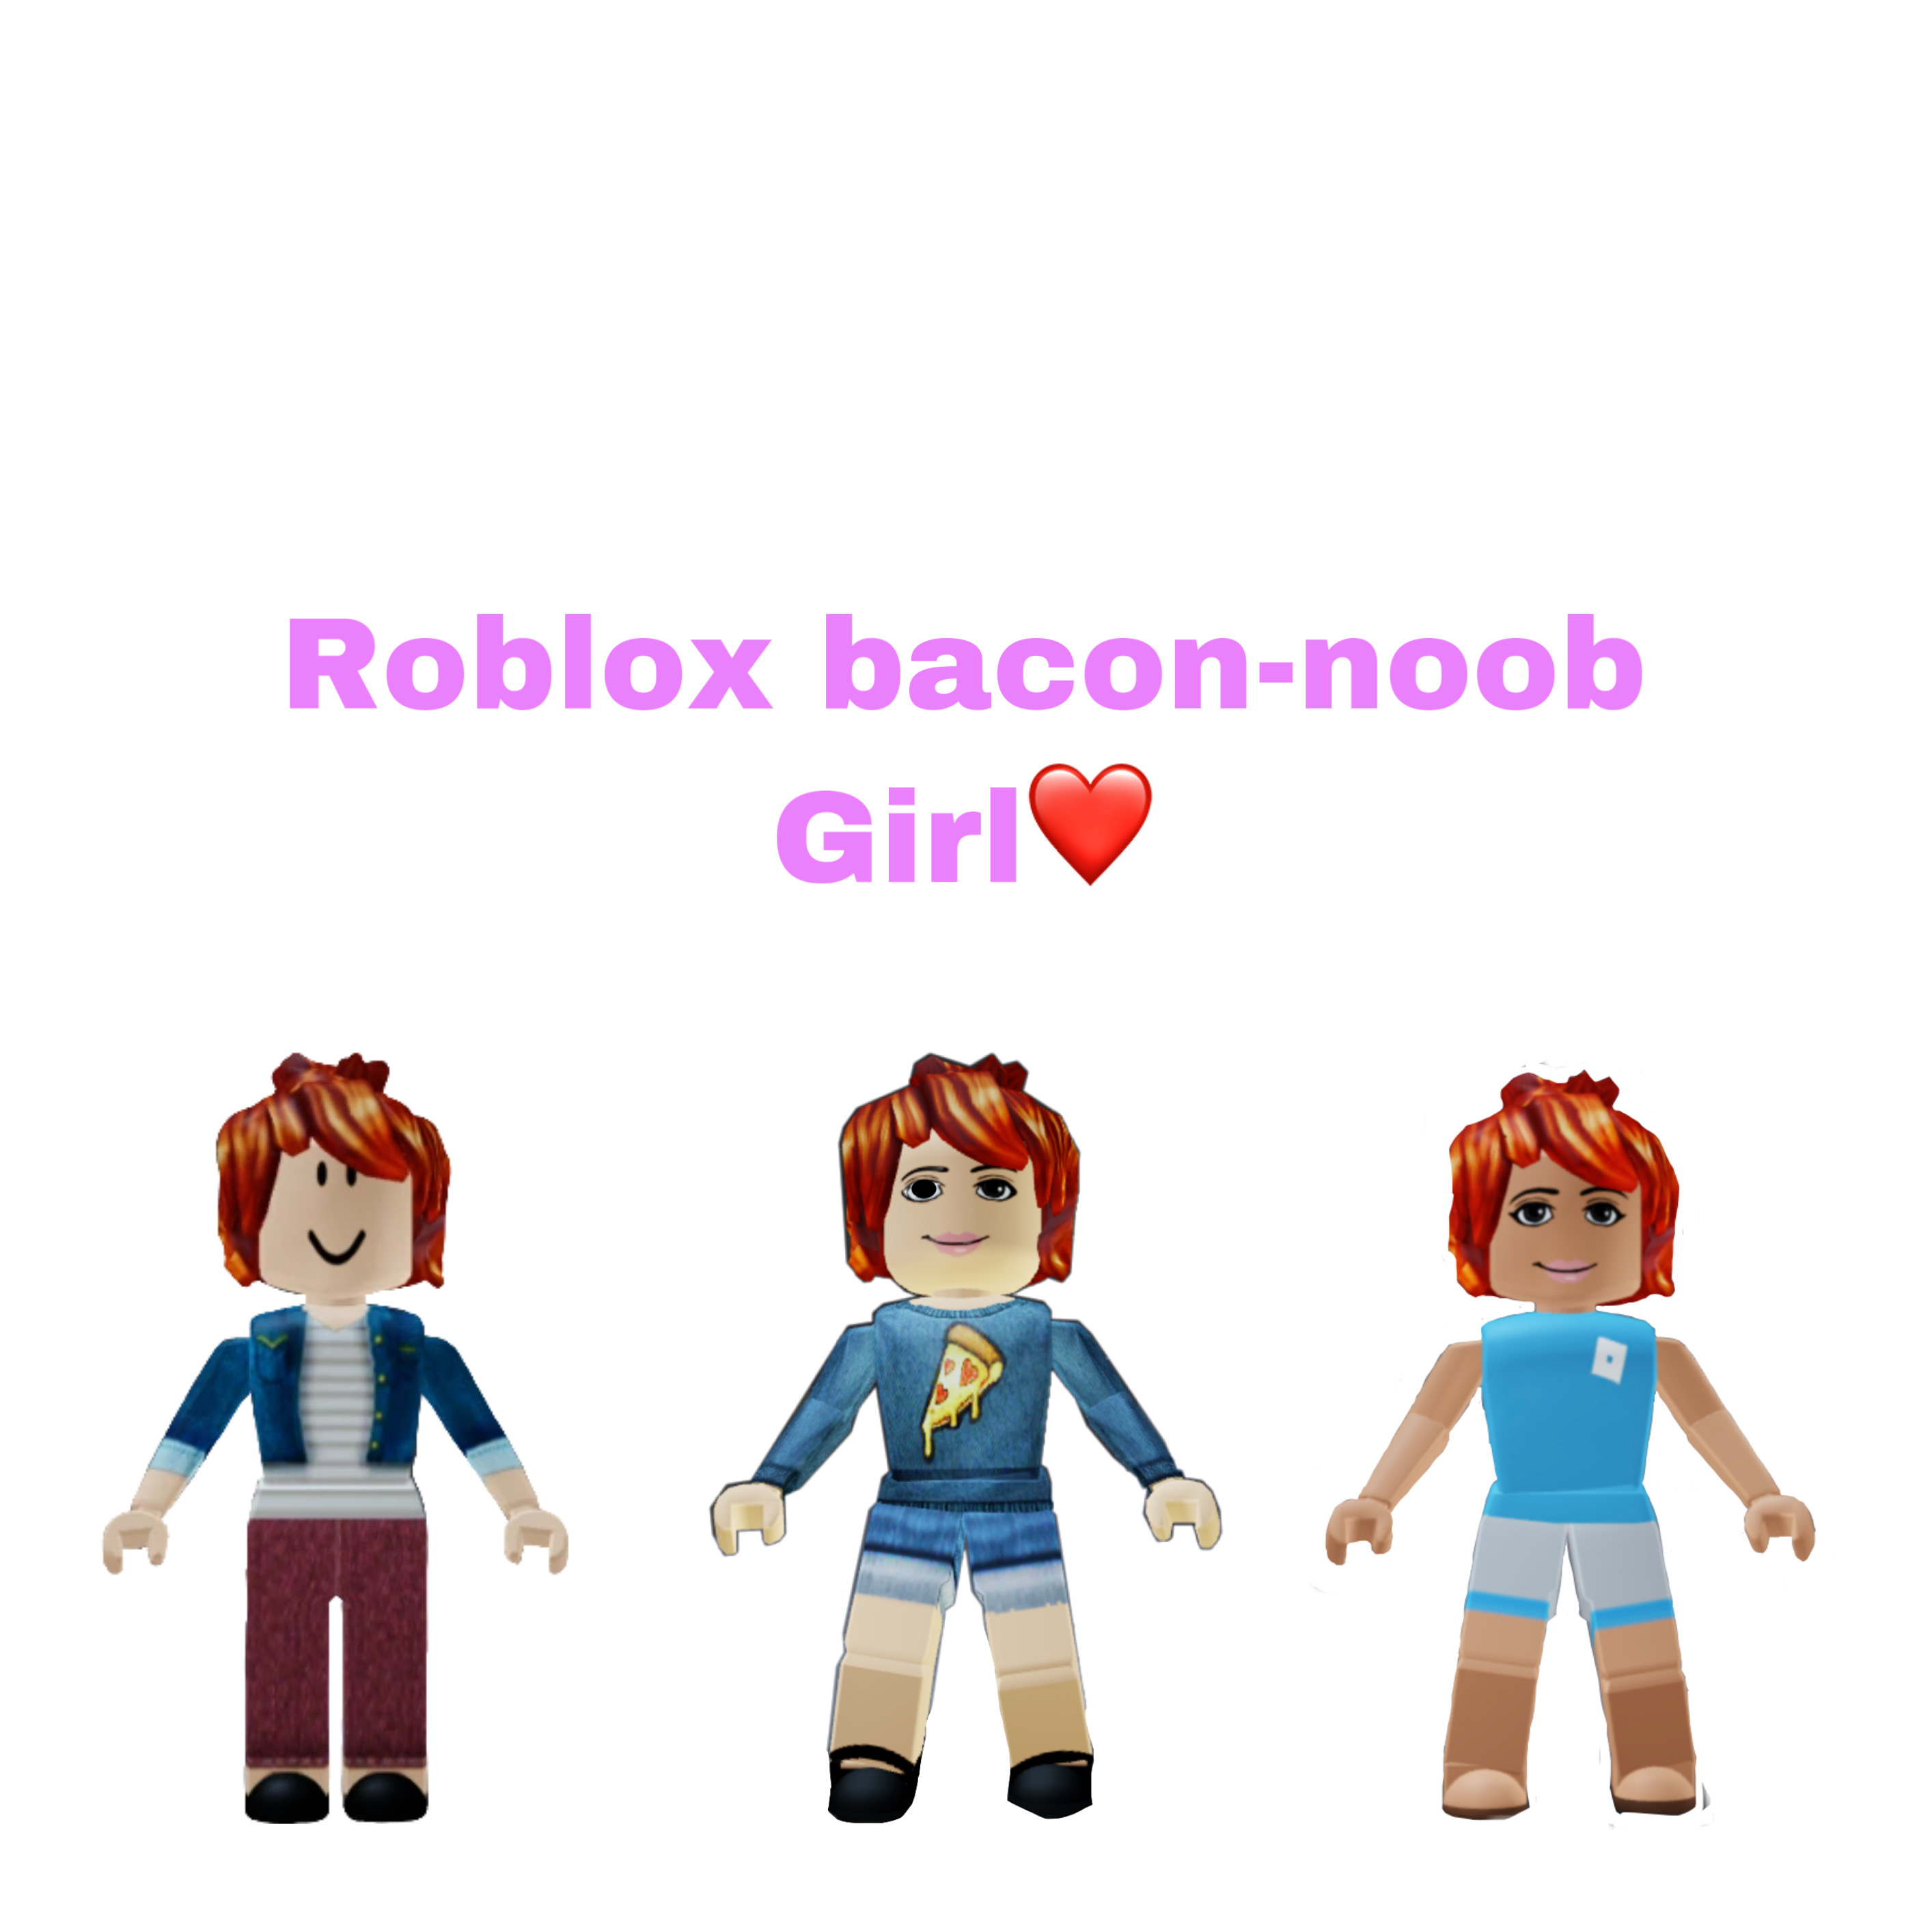 roblox bacon girl